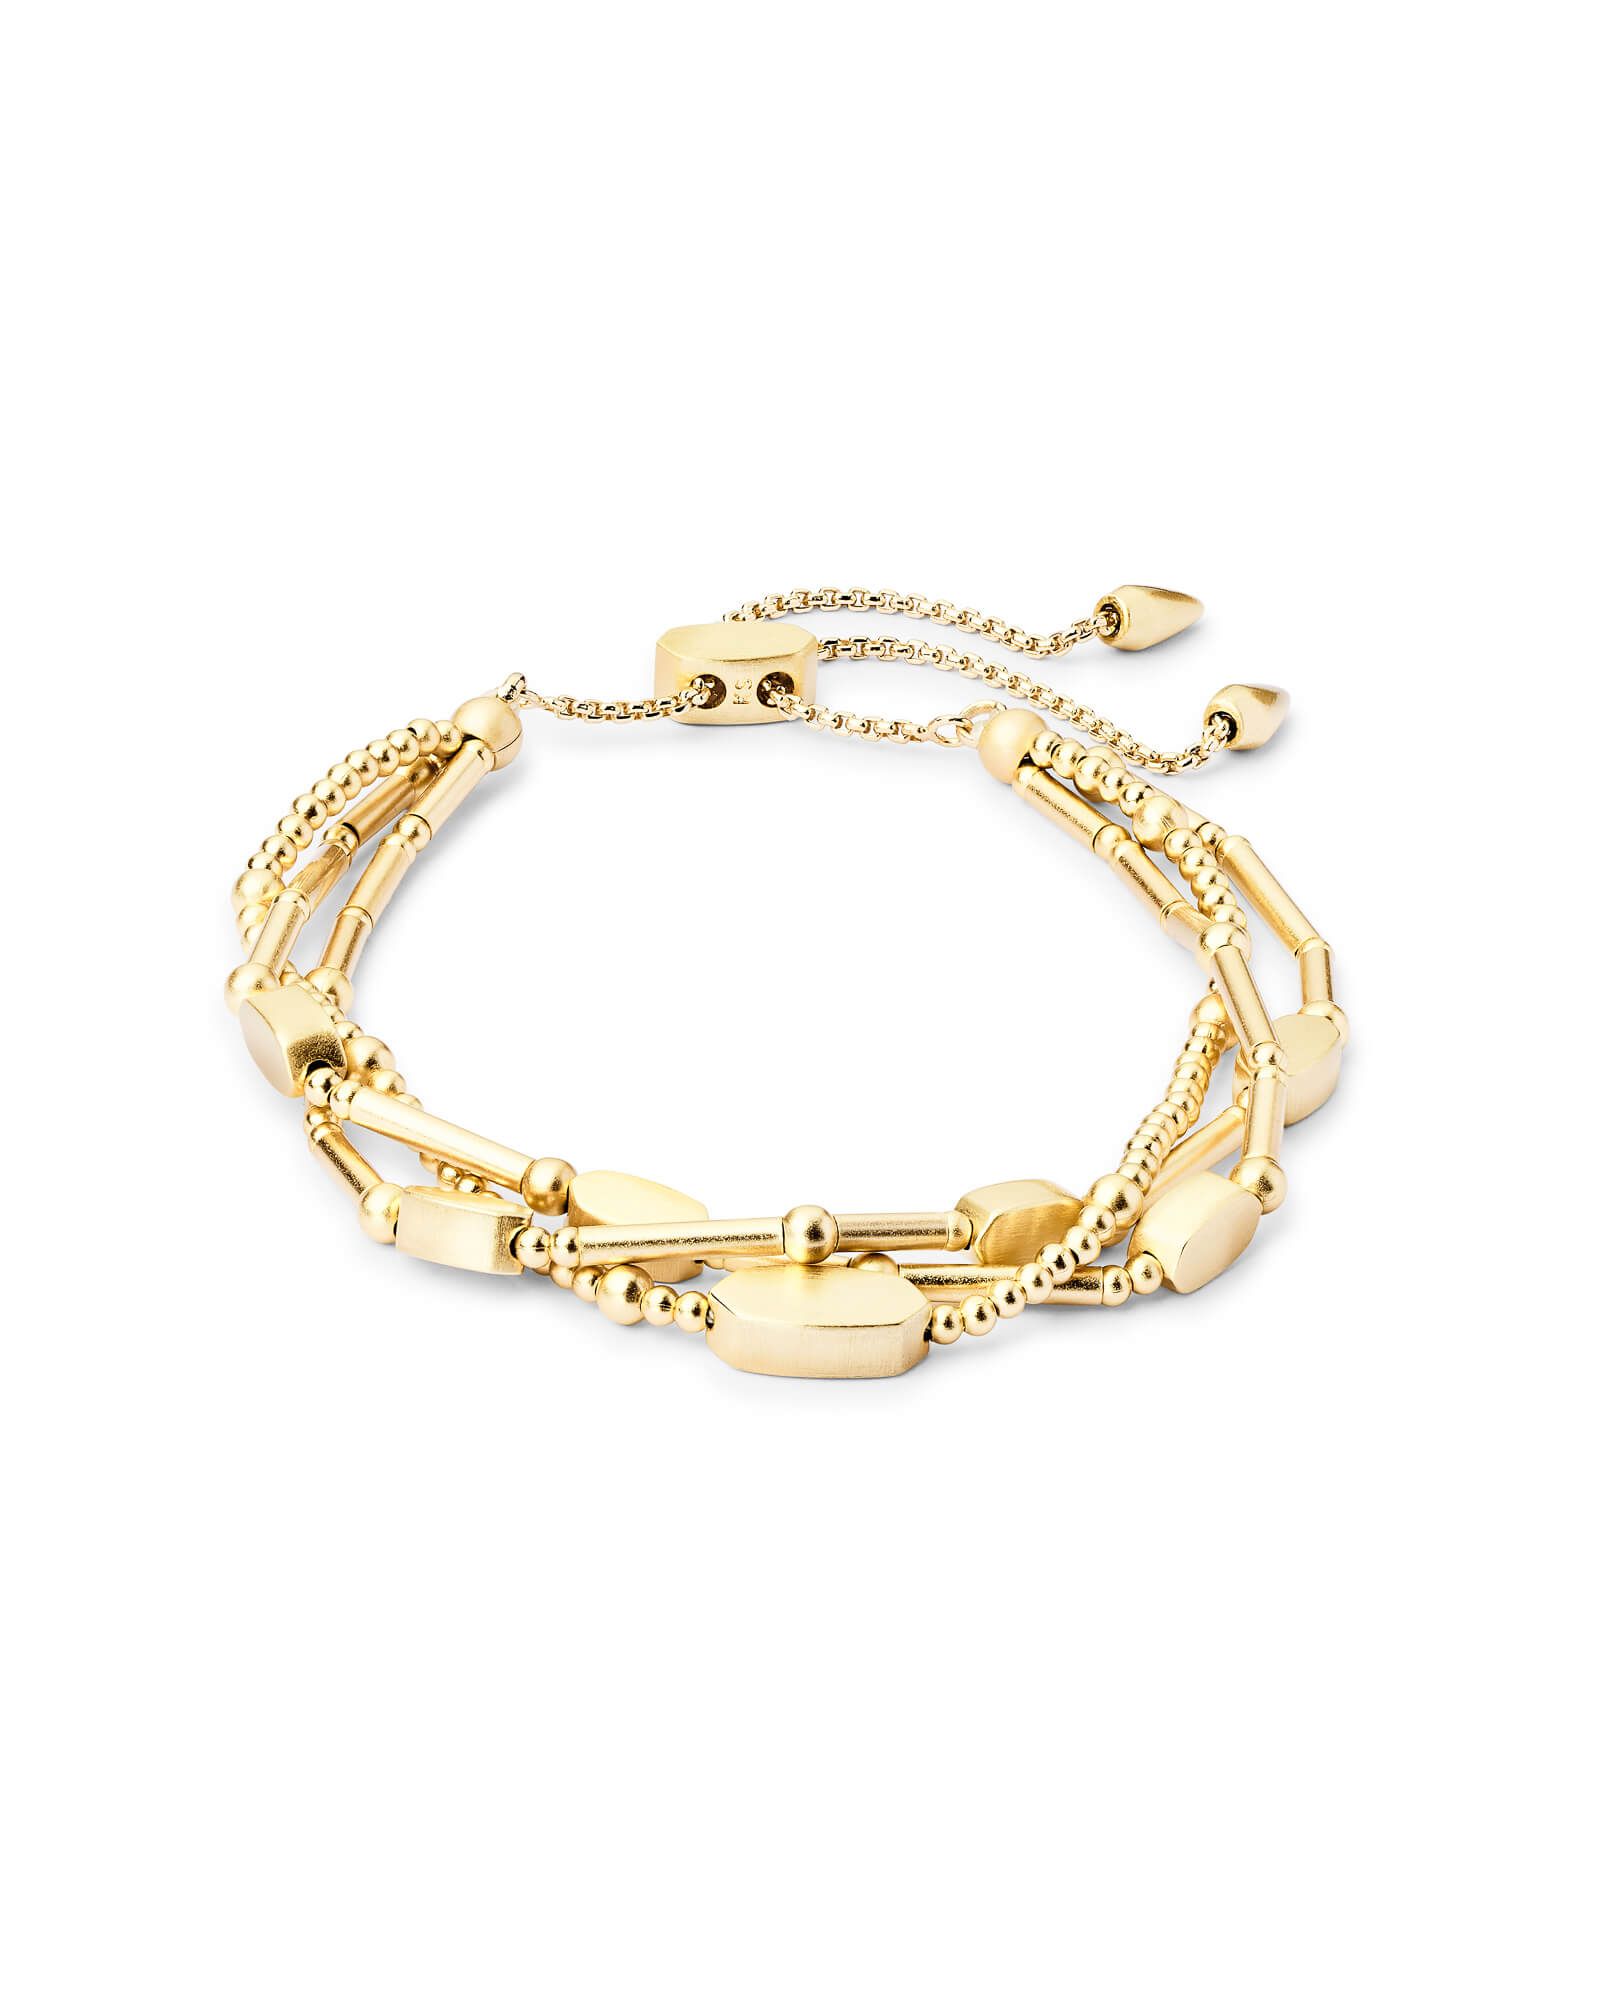 Chantal Beaded Bracelet in Gold | Kendra Scott